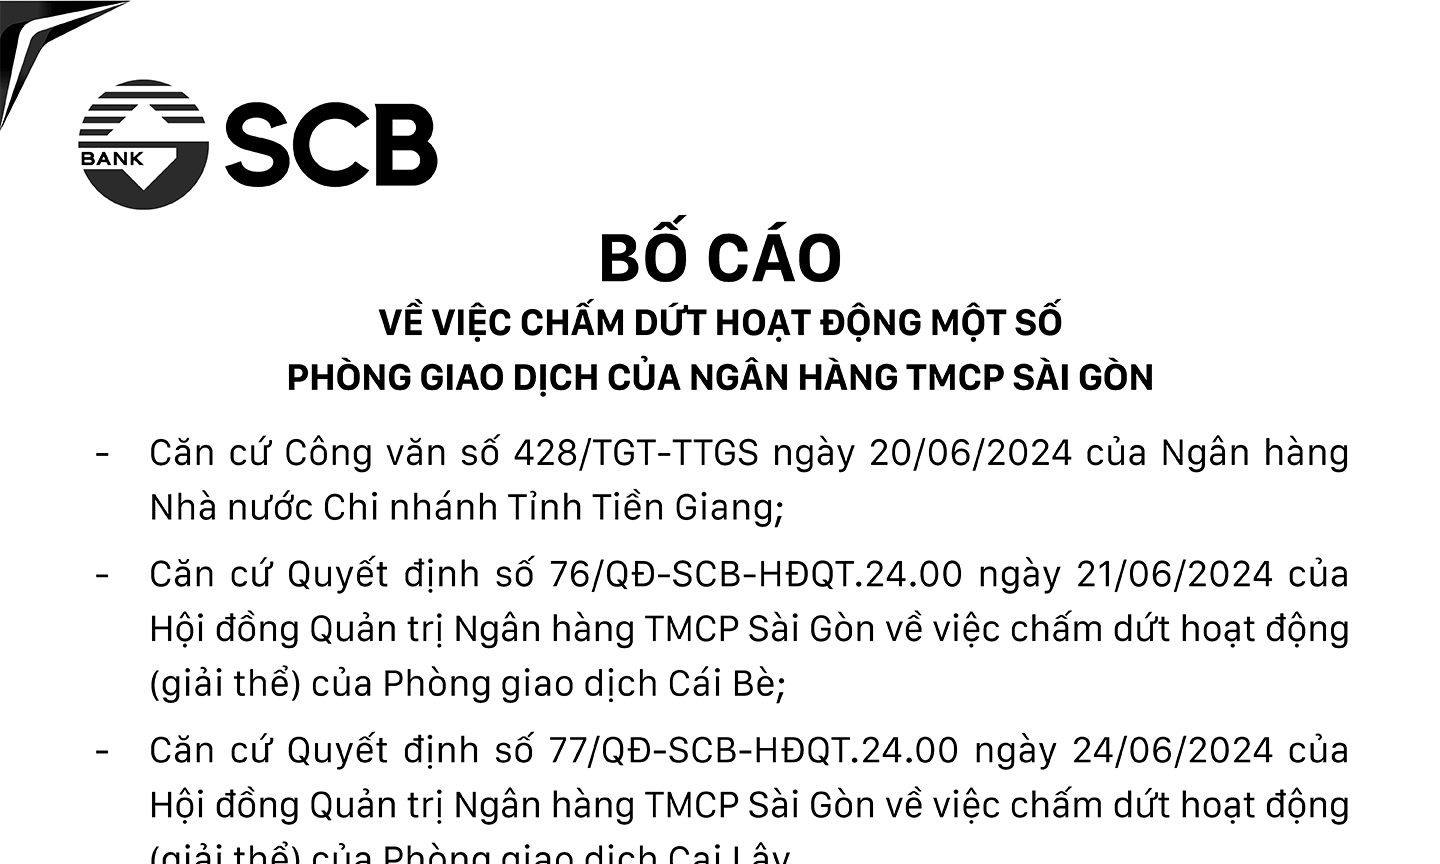 Bố cáo về việc chấm dứt hoạt động một số phòng giao dịch của Ngân hàng TMCP Sài Gòn